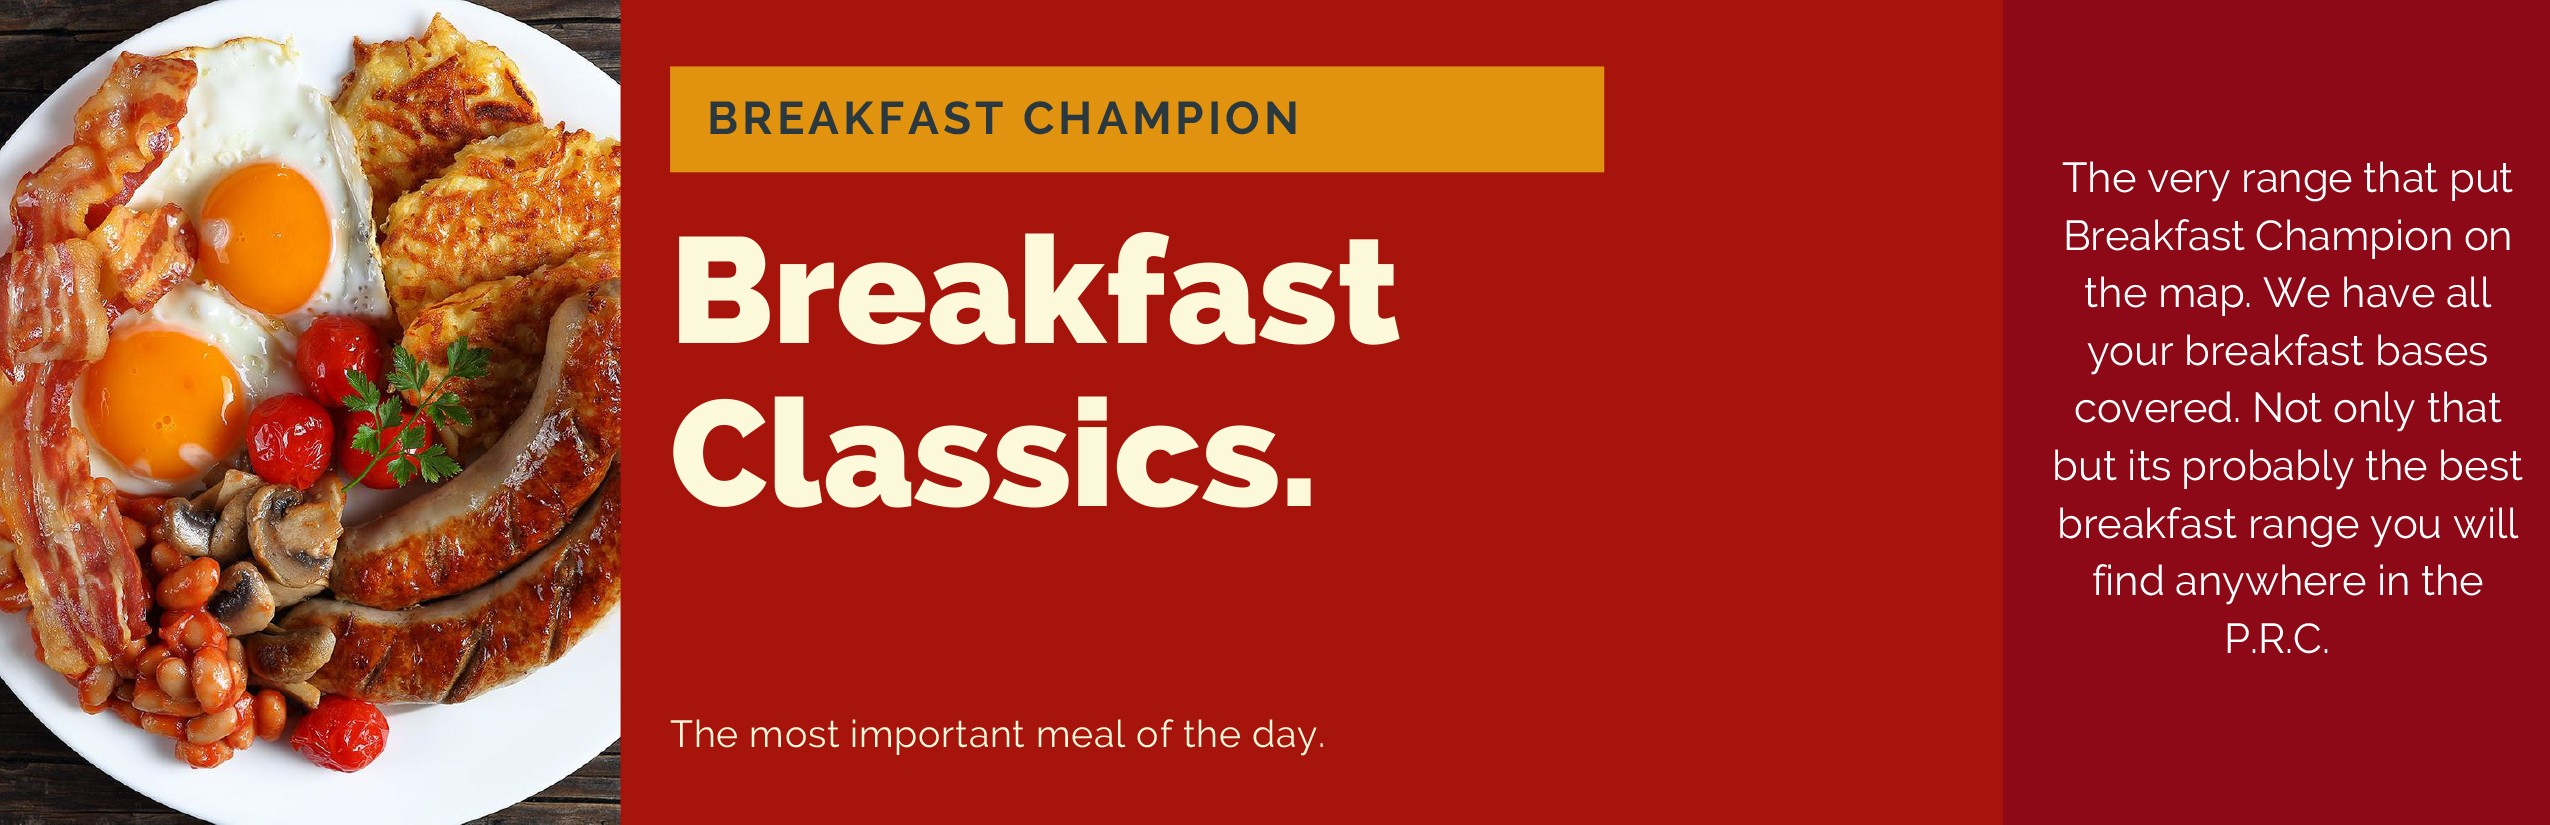 1. Breakfast Classics